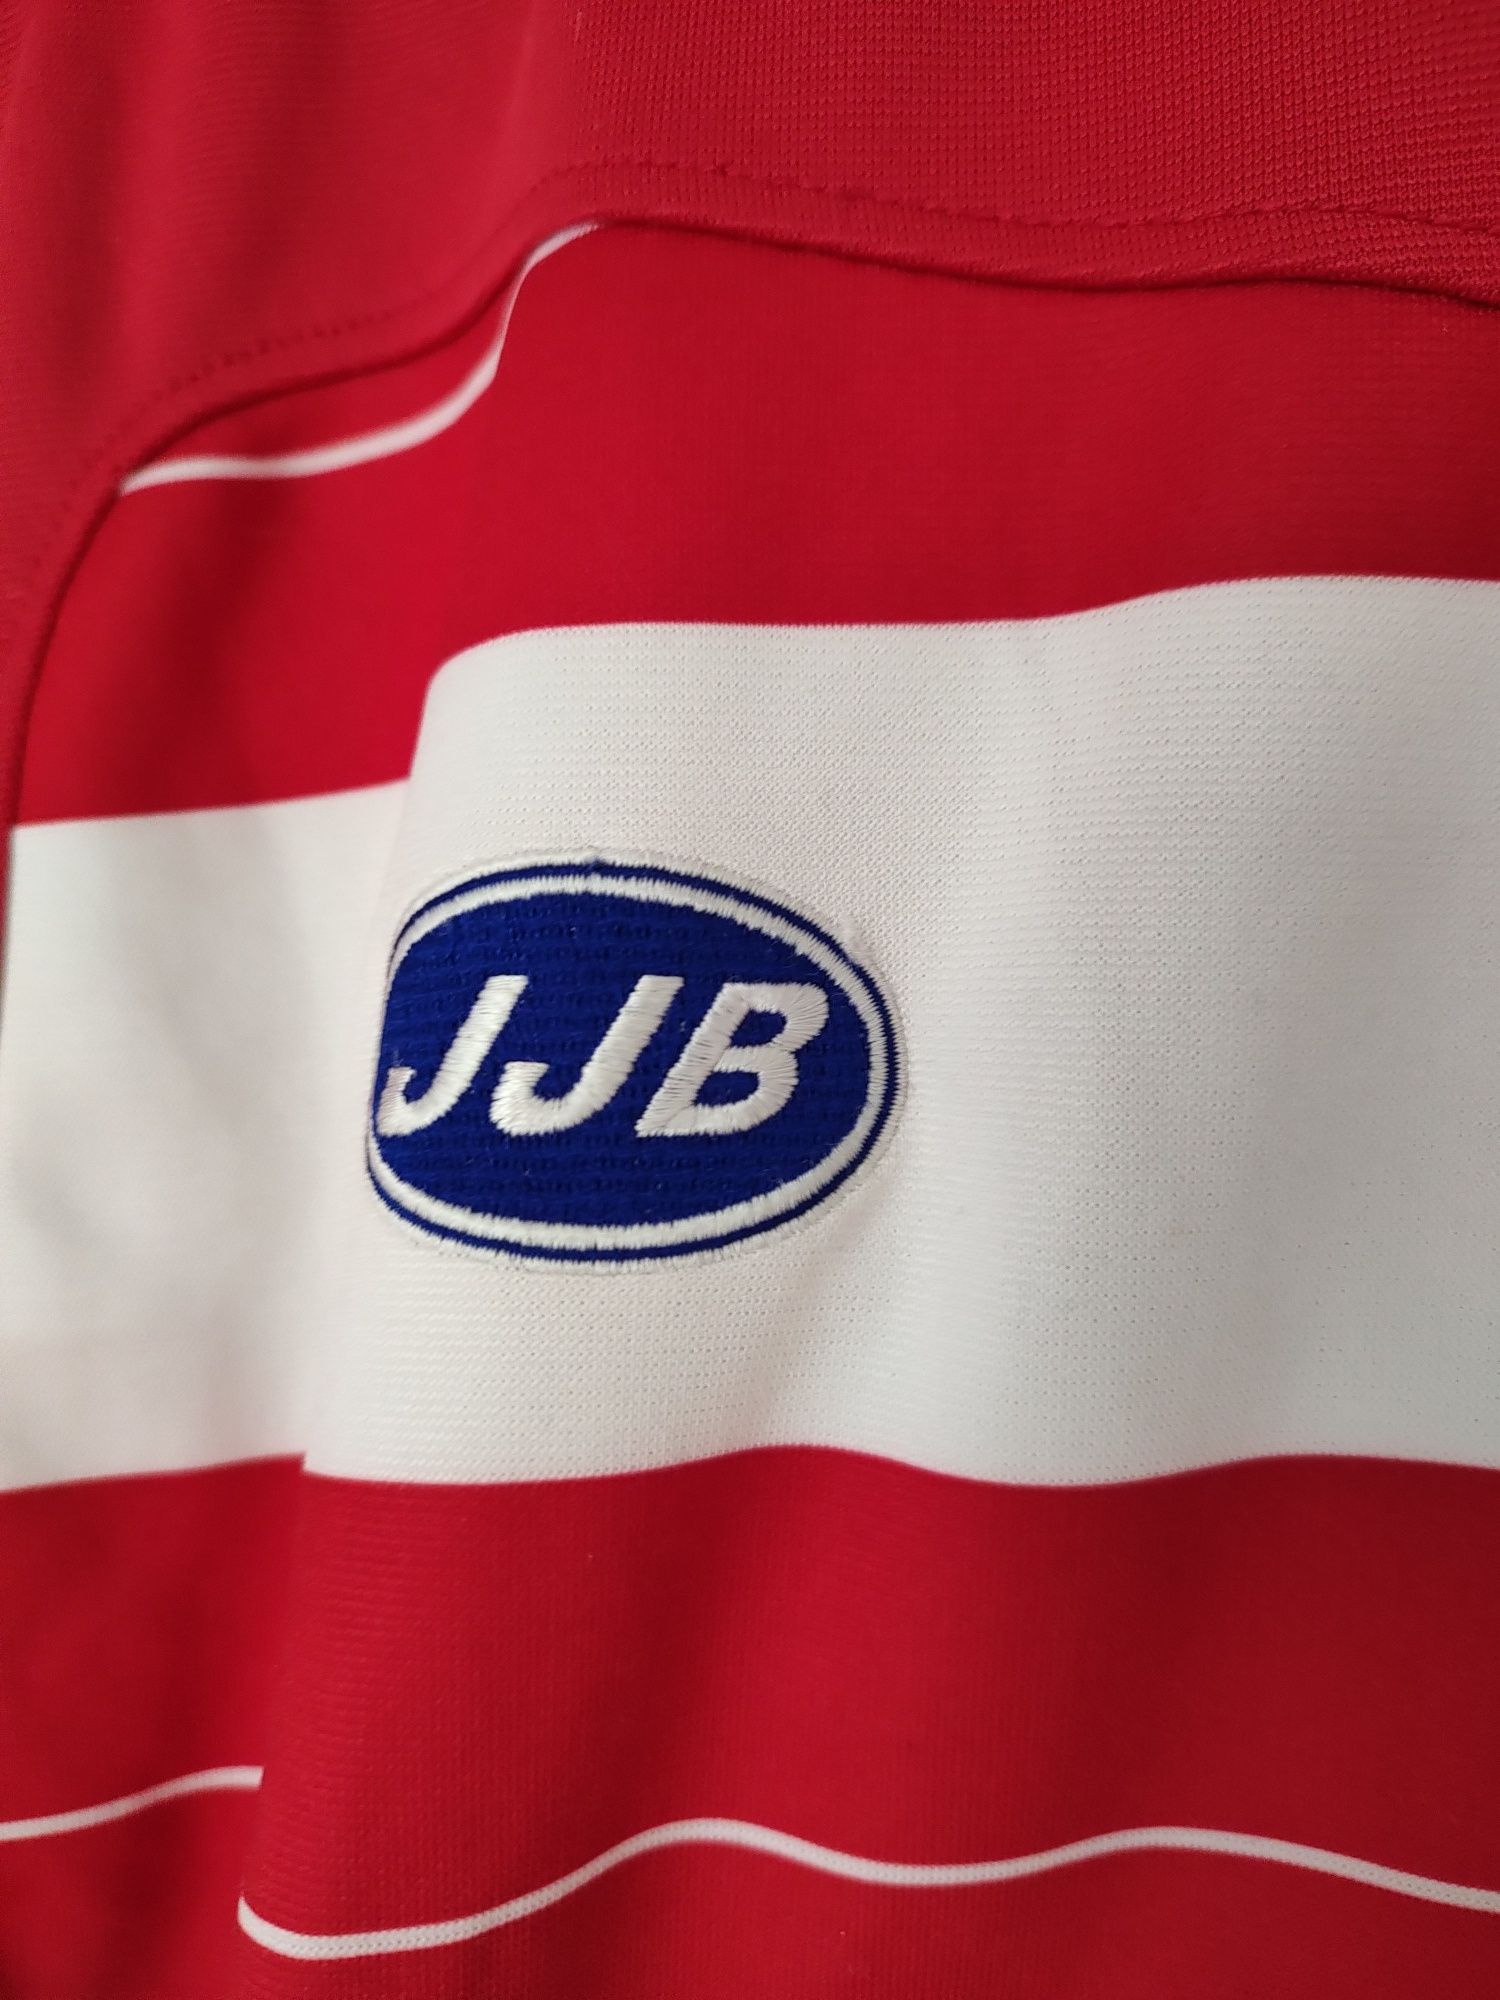 Czerwona bluza sportowa męska JJB rozmiar S small Jersey  siłownia